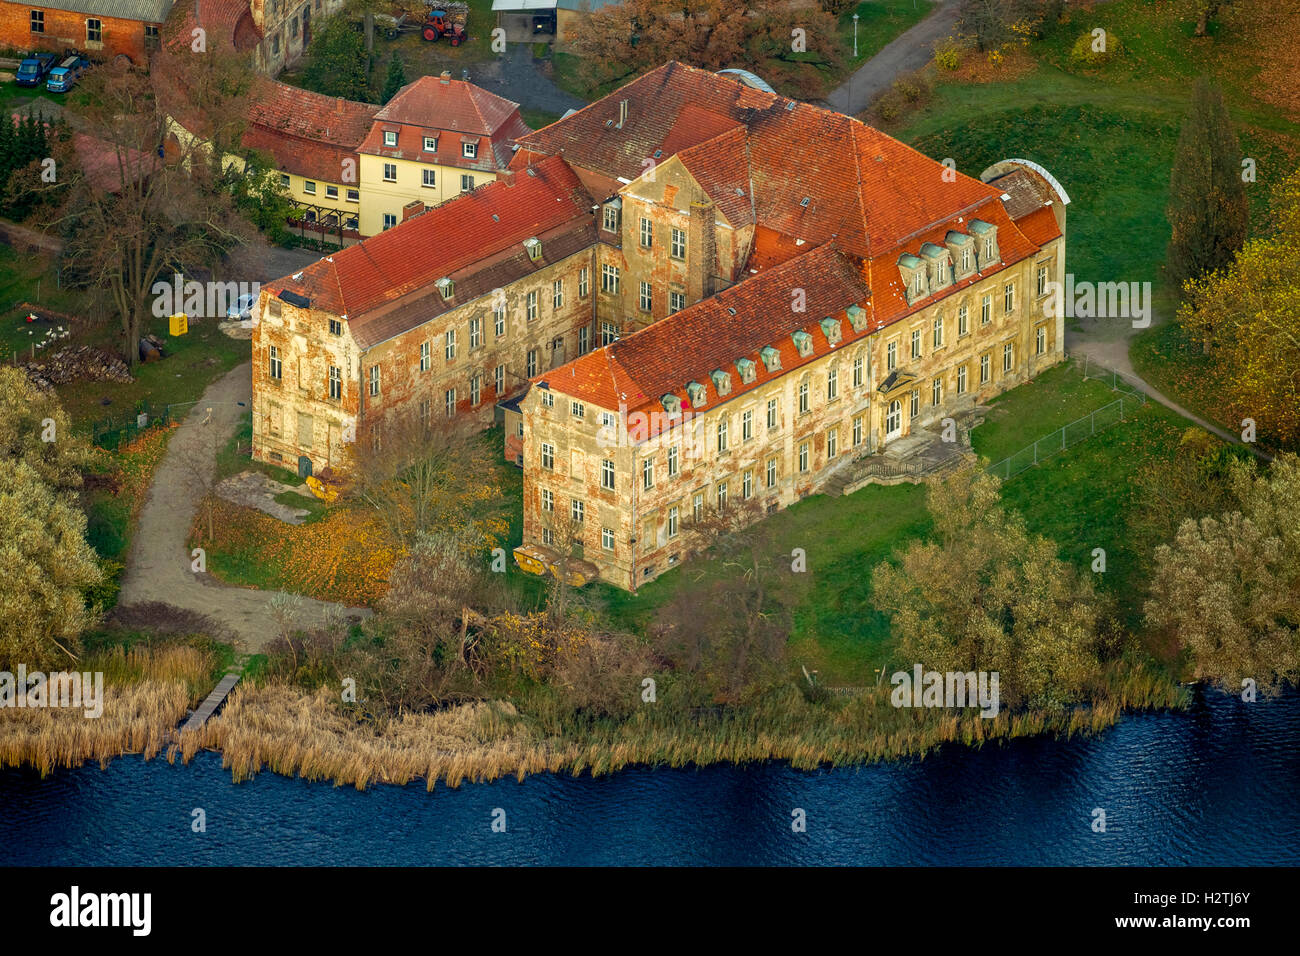 Luftaufnahme, Schloss Ivenack, Stavenhagen, Müritz See Landschaft, Mecklenburg-Vorpommern, Deutschland, Europa Luftaufnahme Vögel-Augen Stockfoto